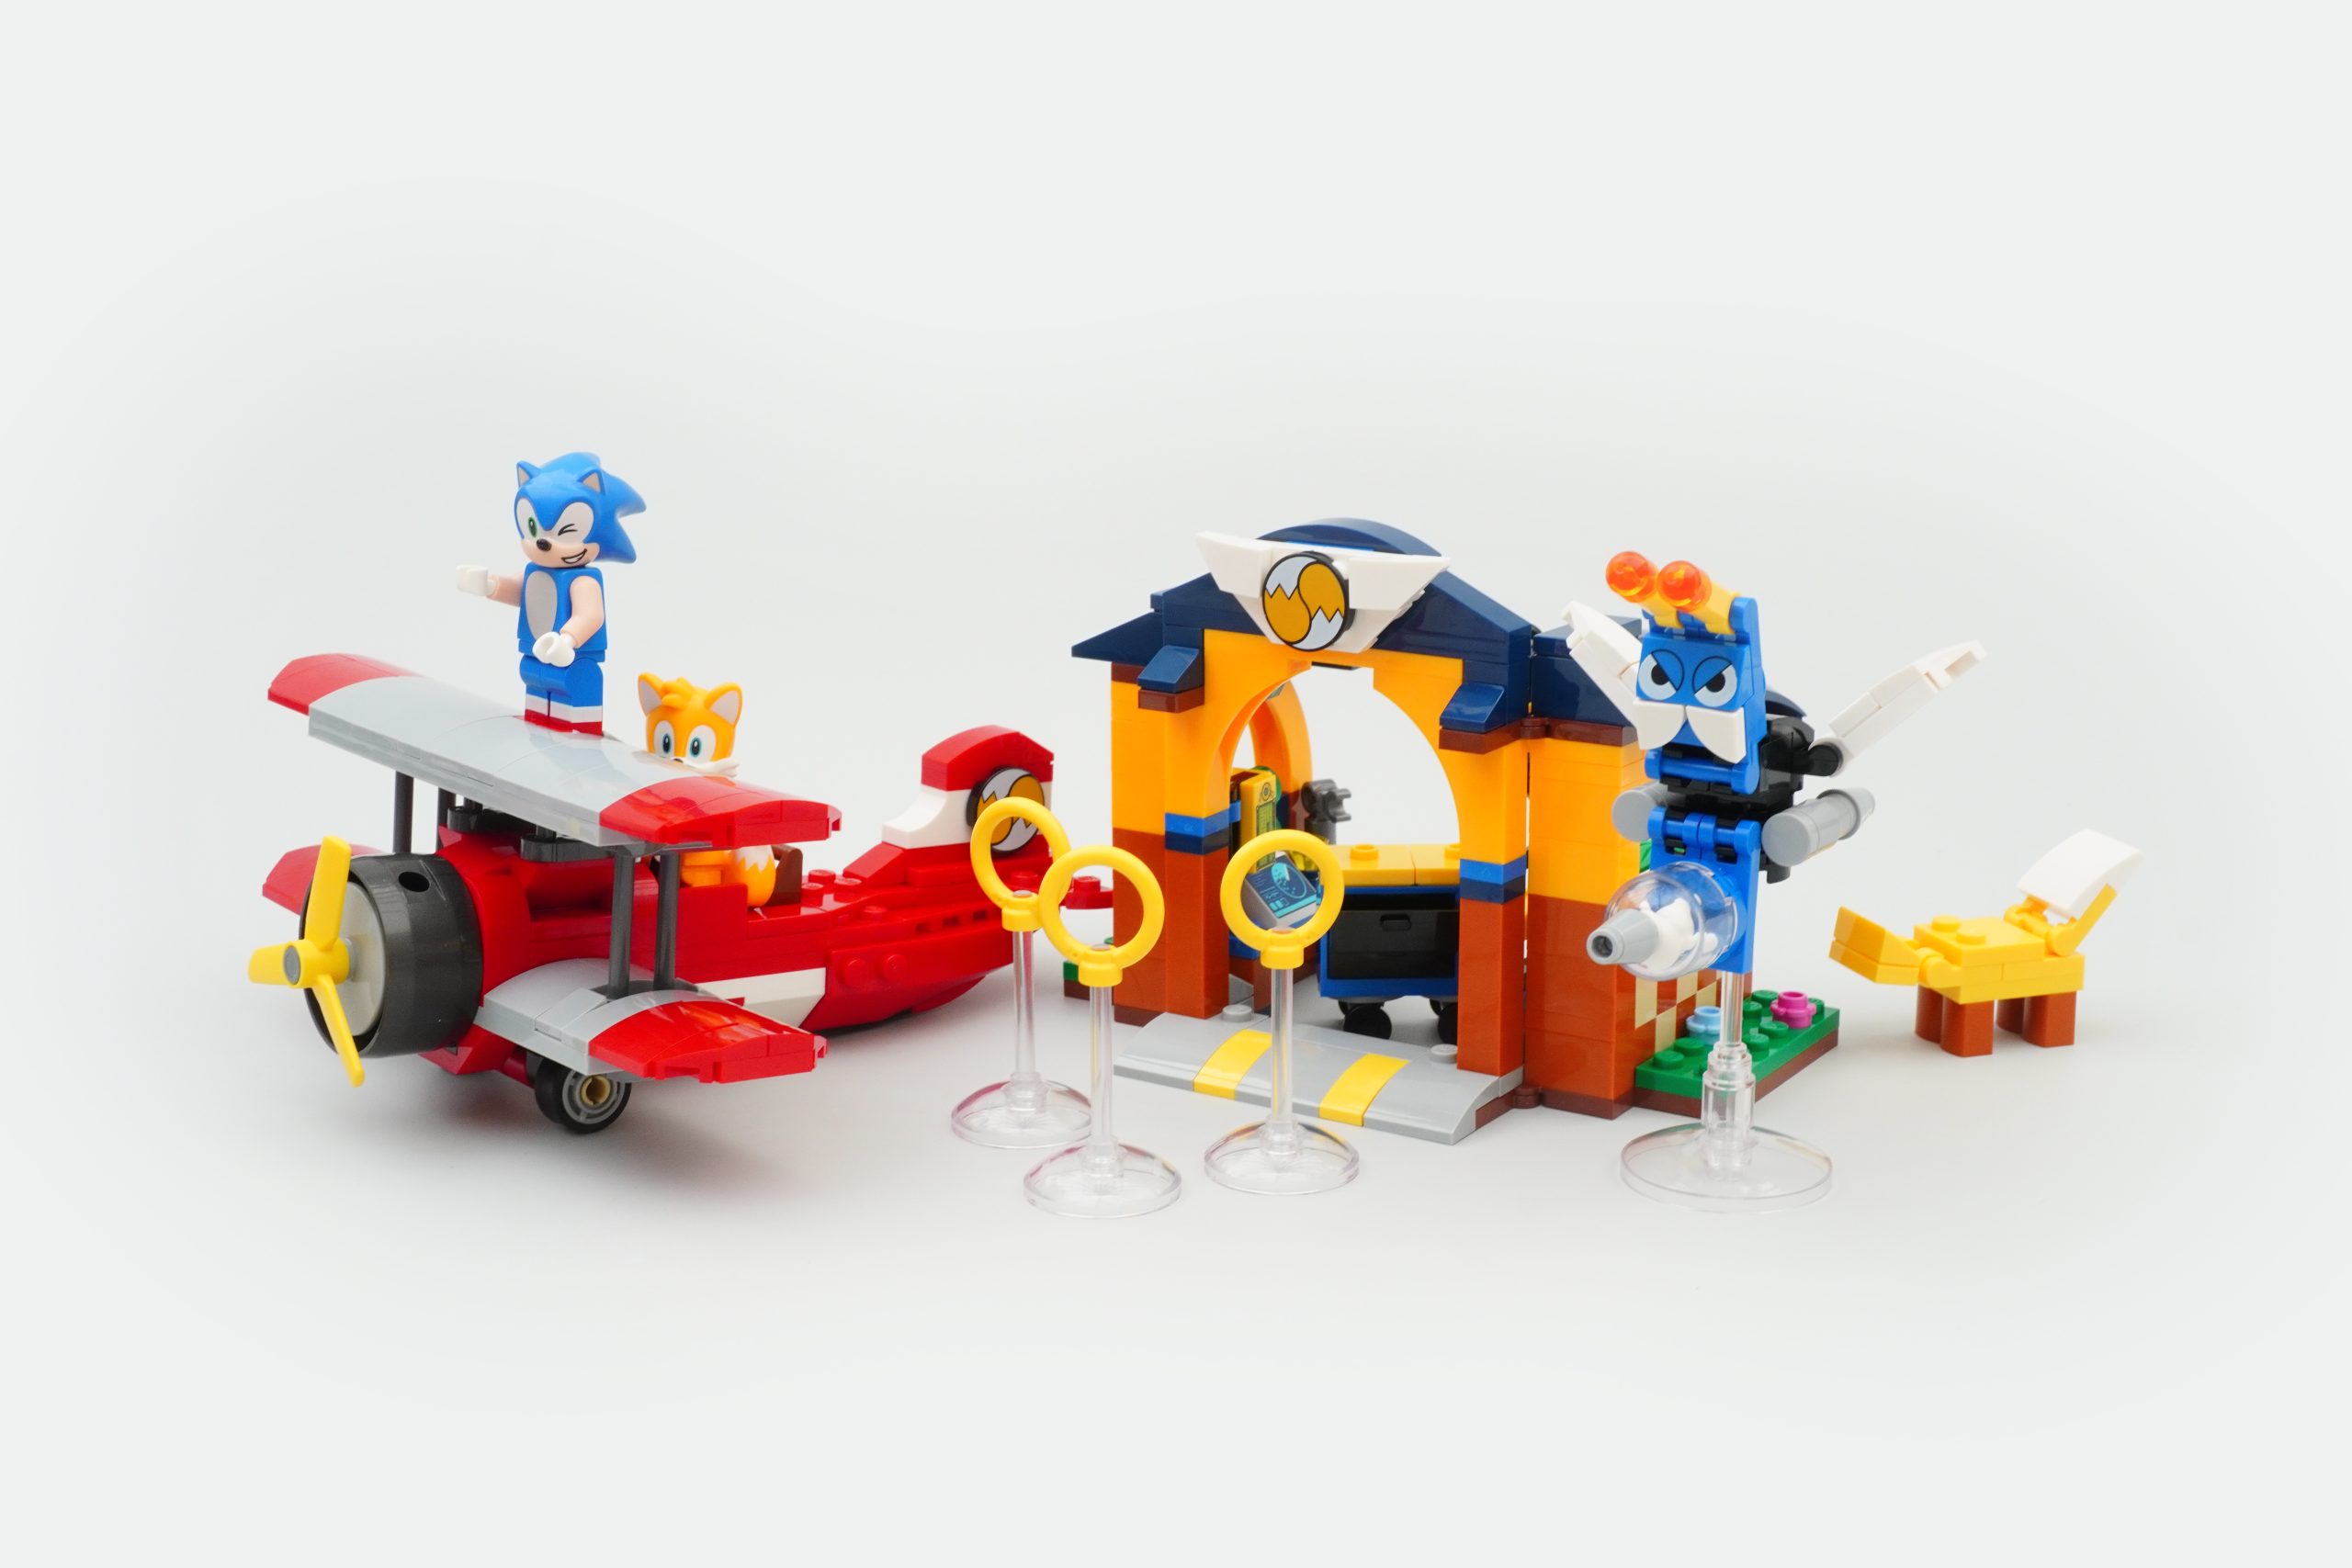 Lego Sonic - Oficina Do Tails E Avião Tornado 76991